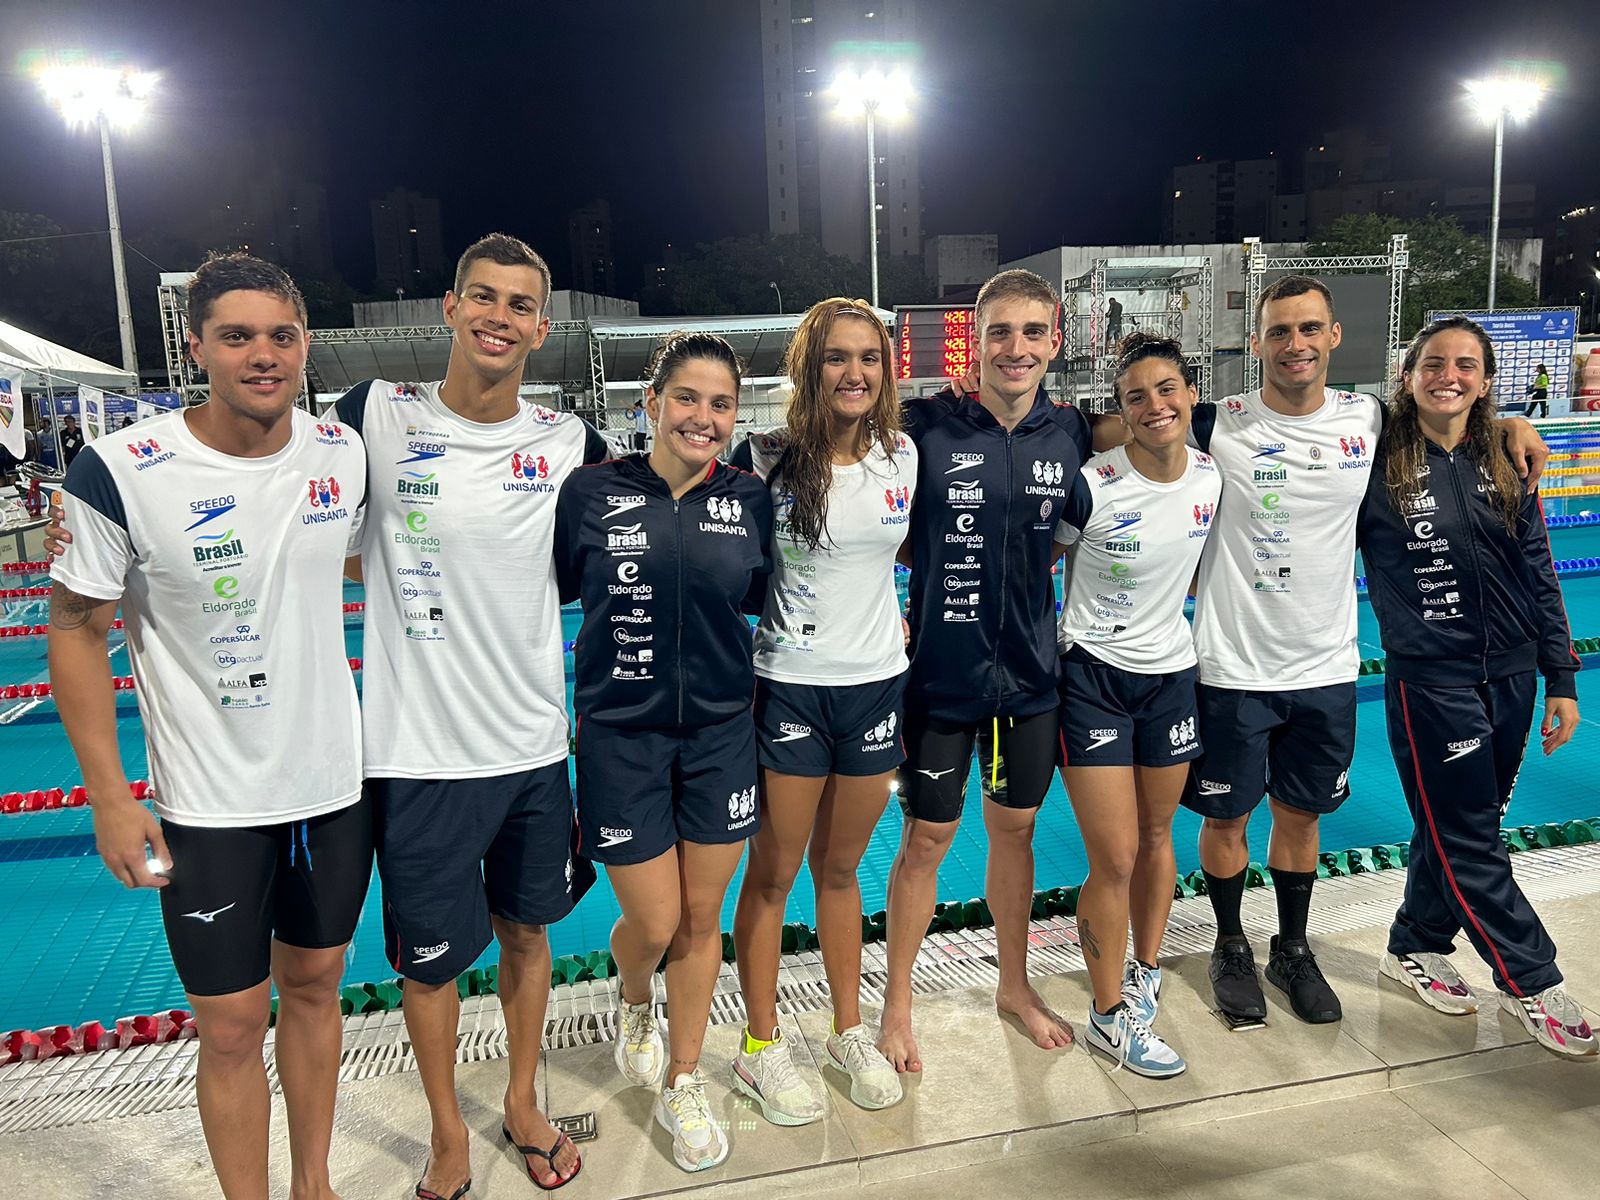 8 nadadores de Natação Unisanta serán convocados para la selección brasileña después del Trofeo Brasil